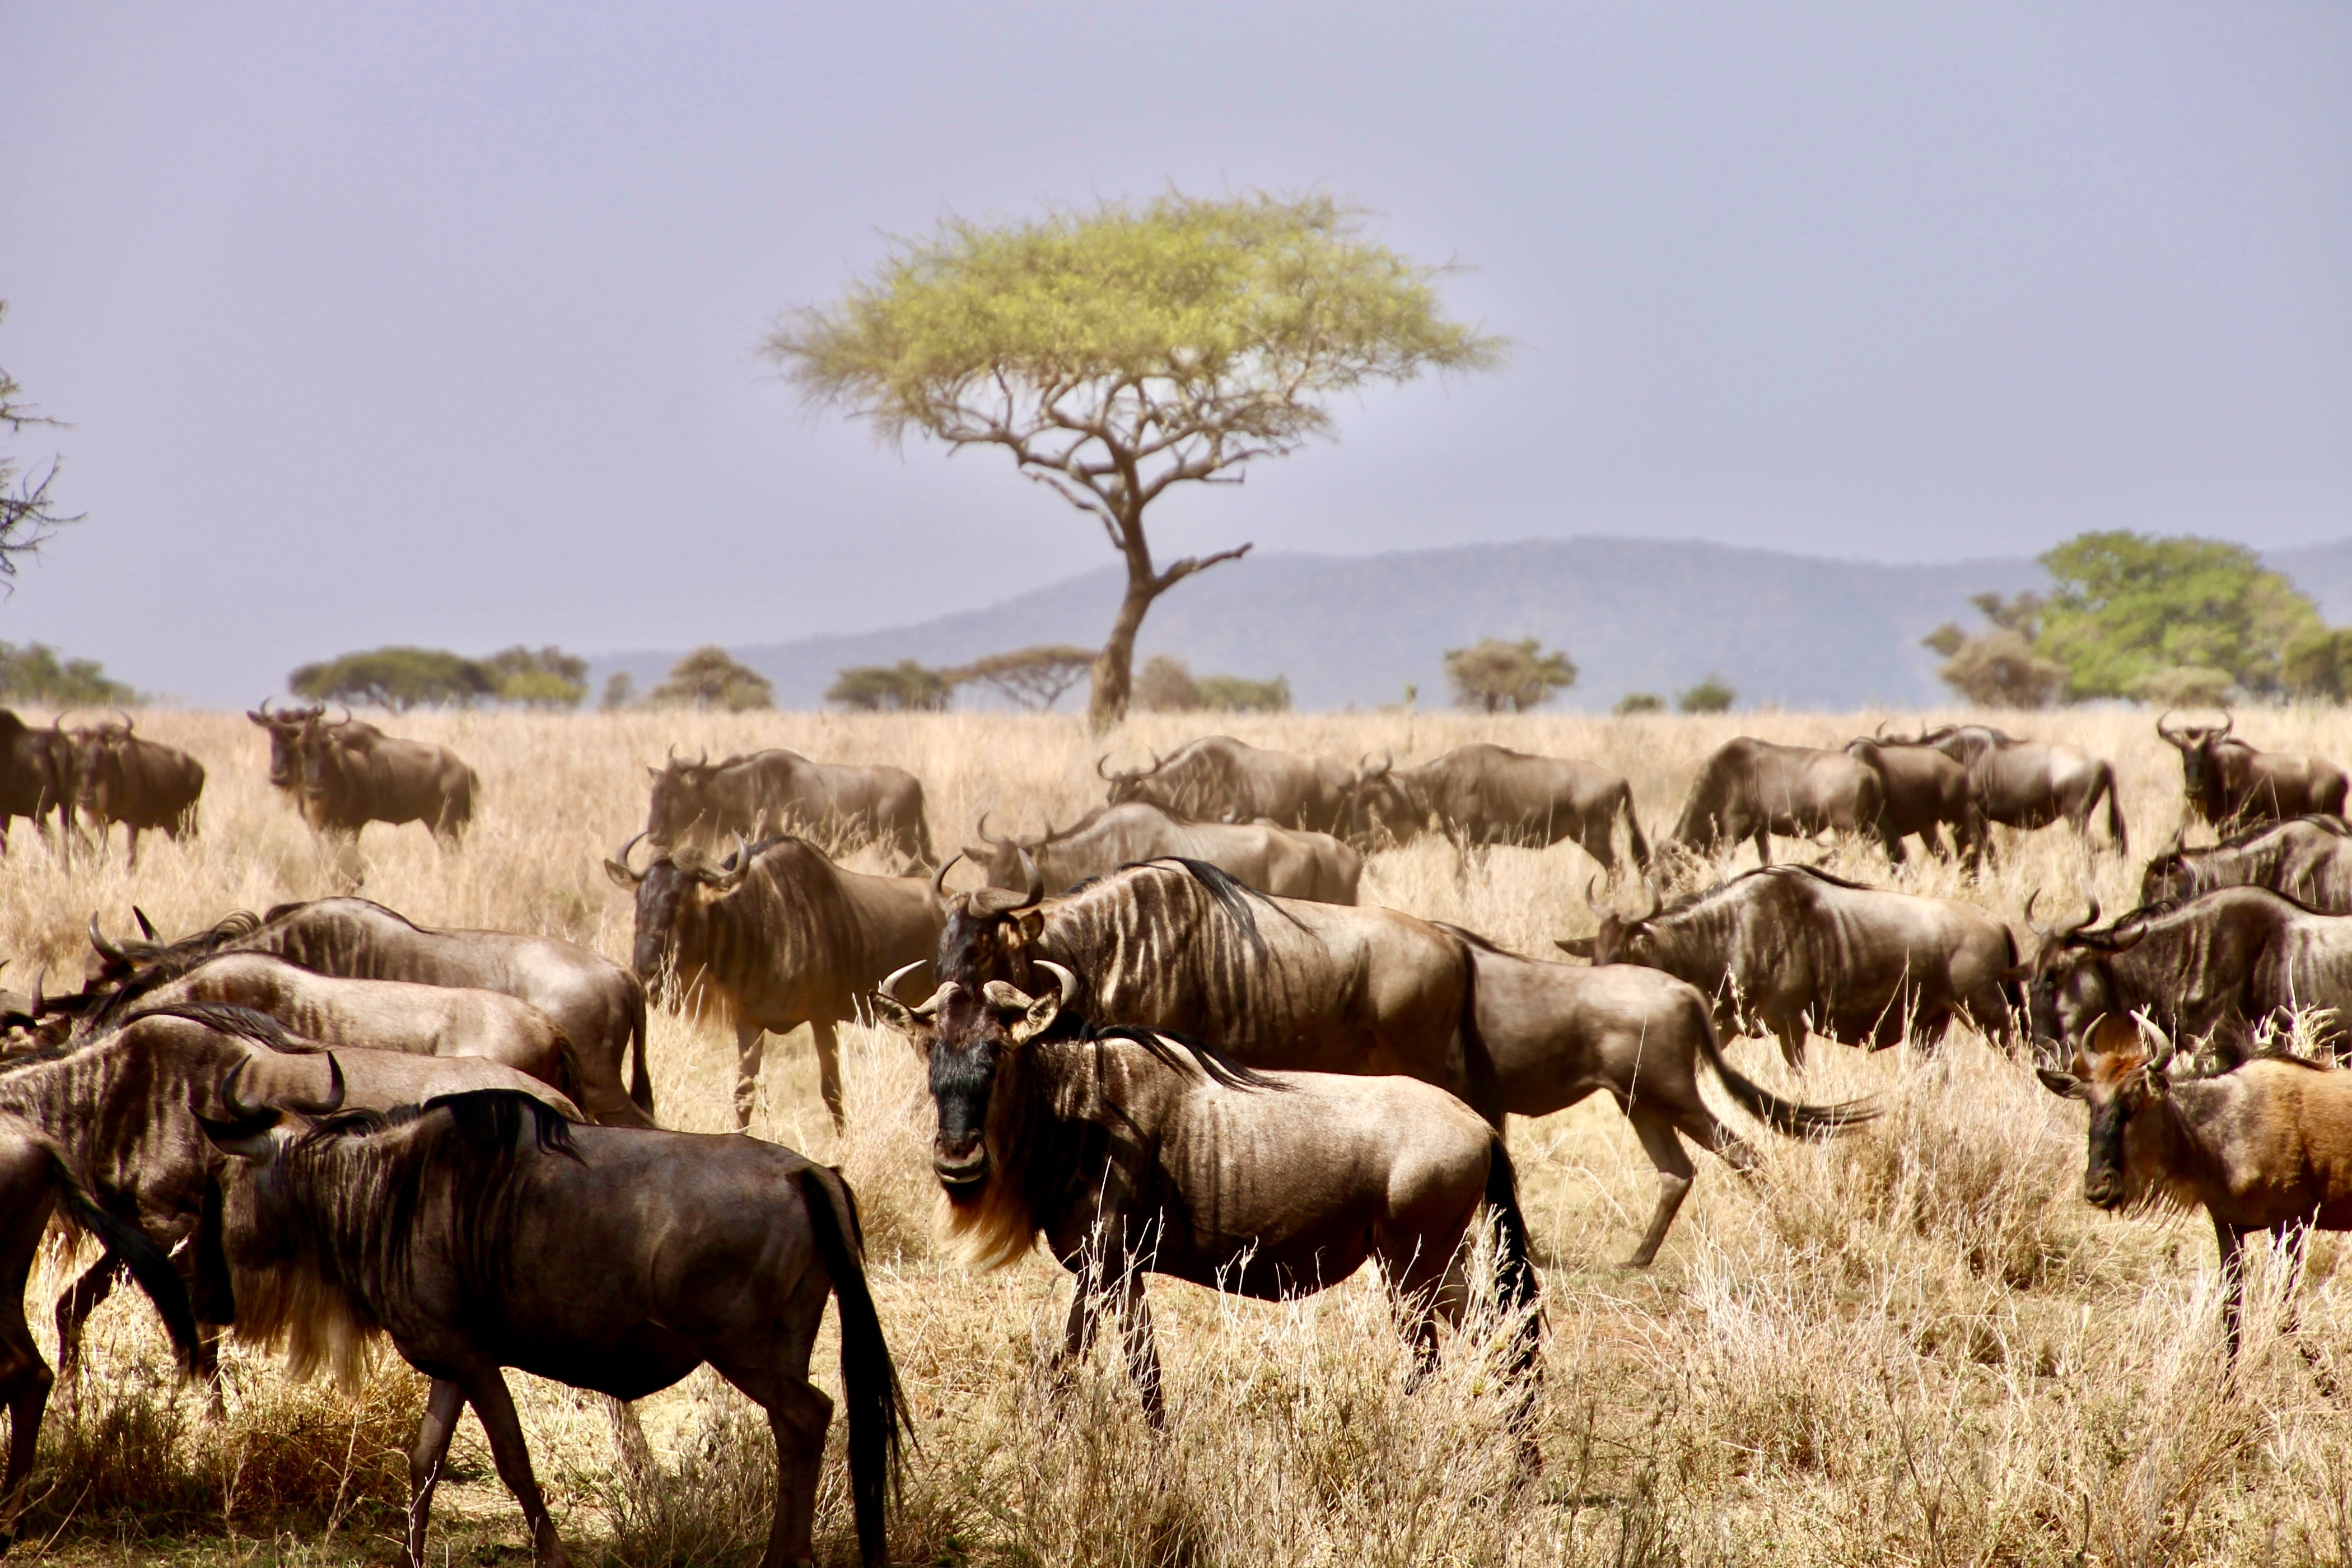 Serengeti wildebeest migration 